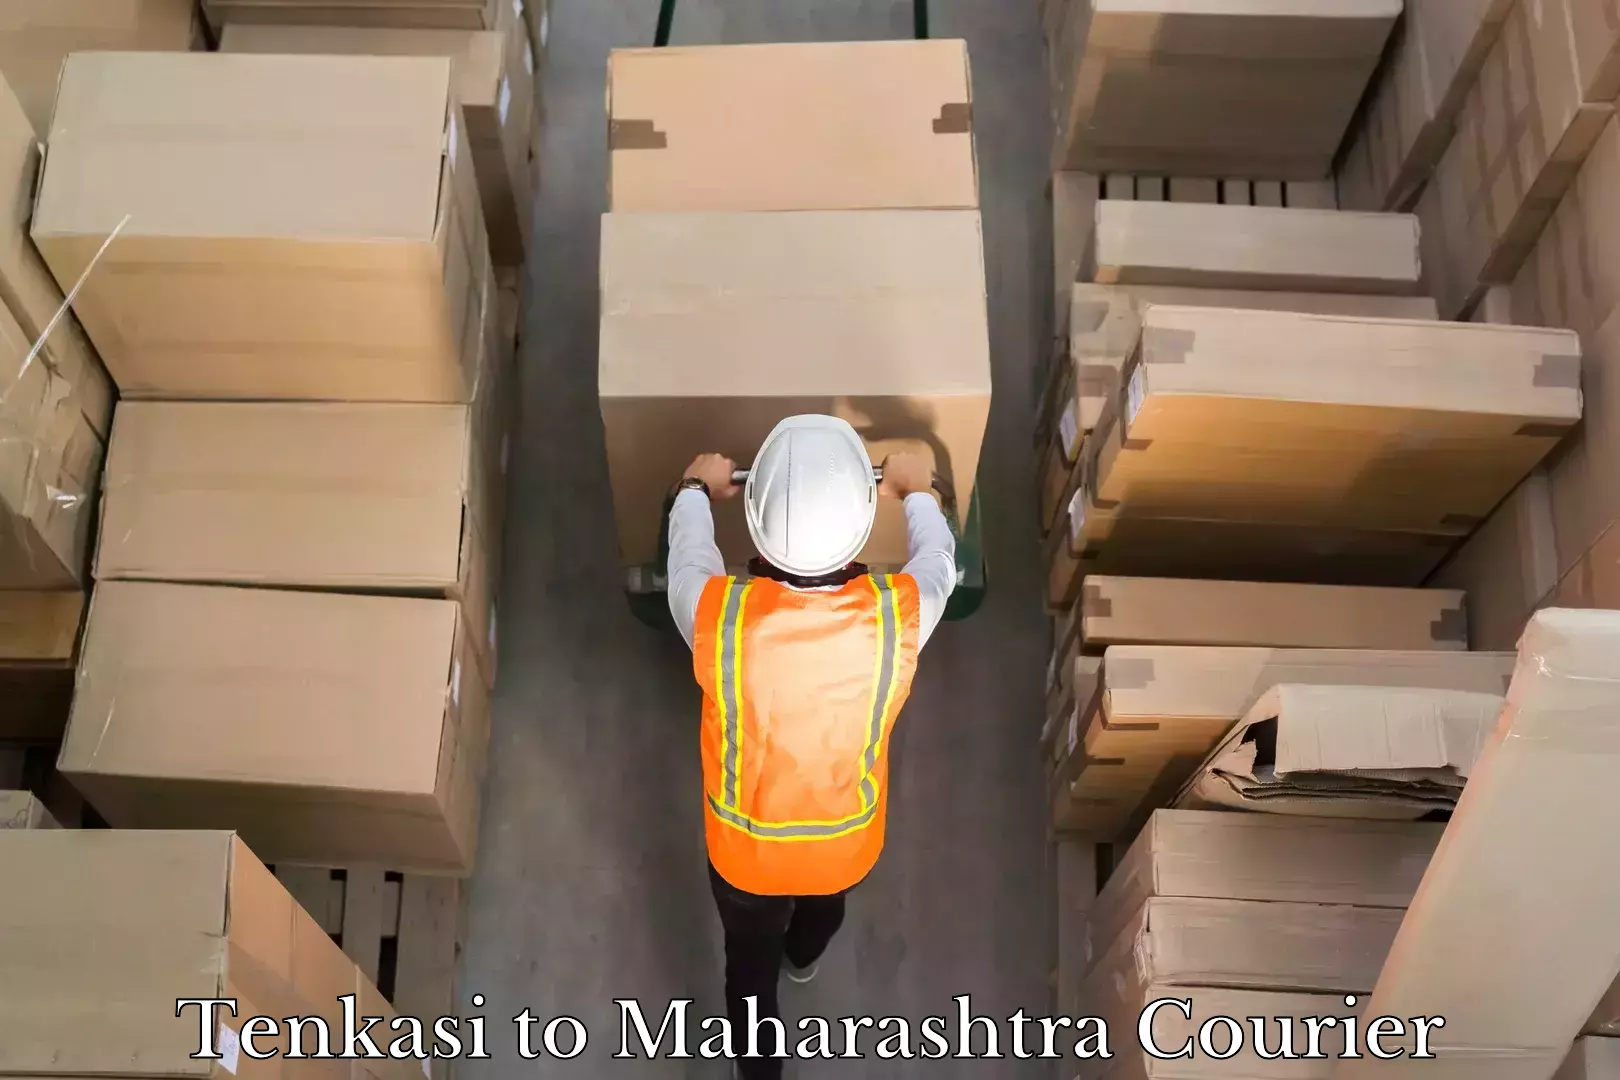 Fast delivery service Tenkasi to Maharashtra